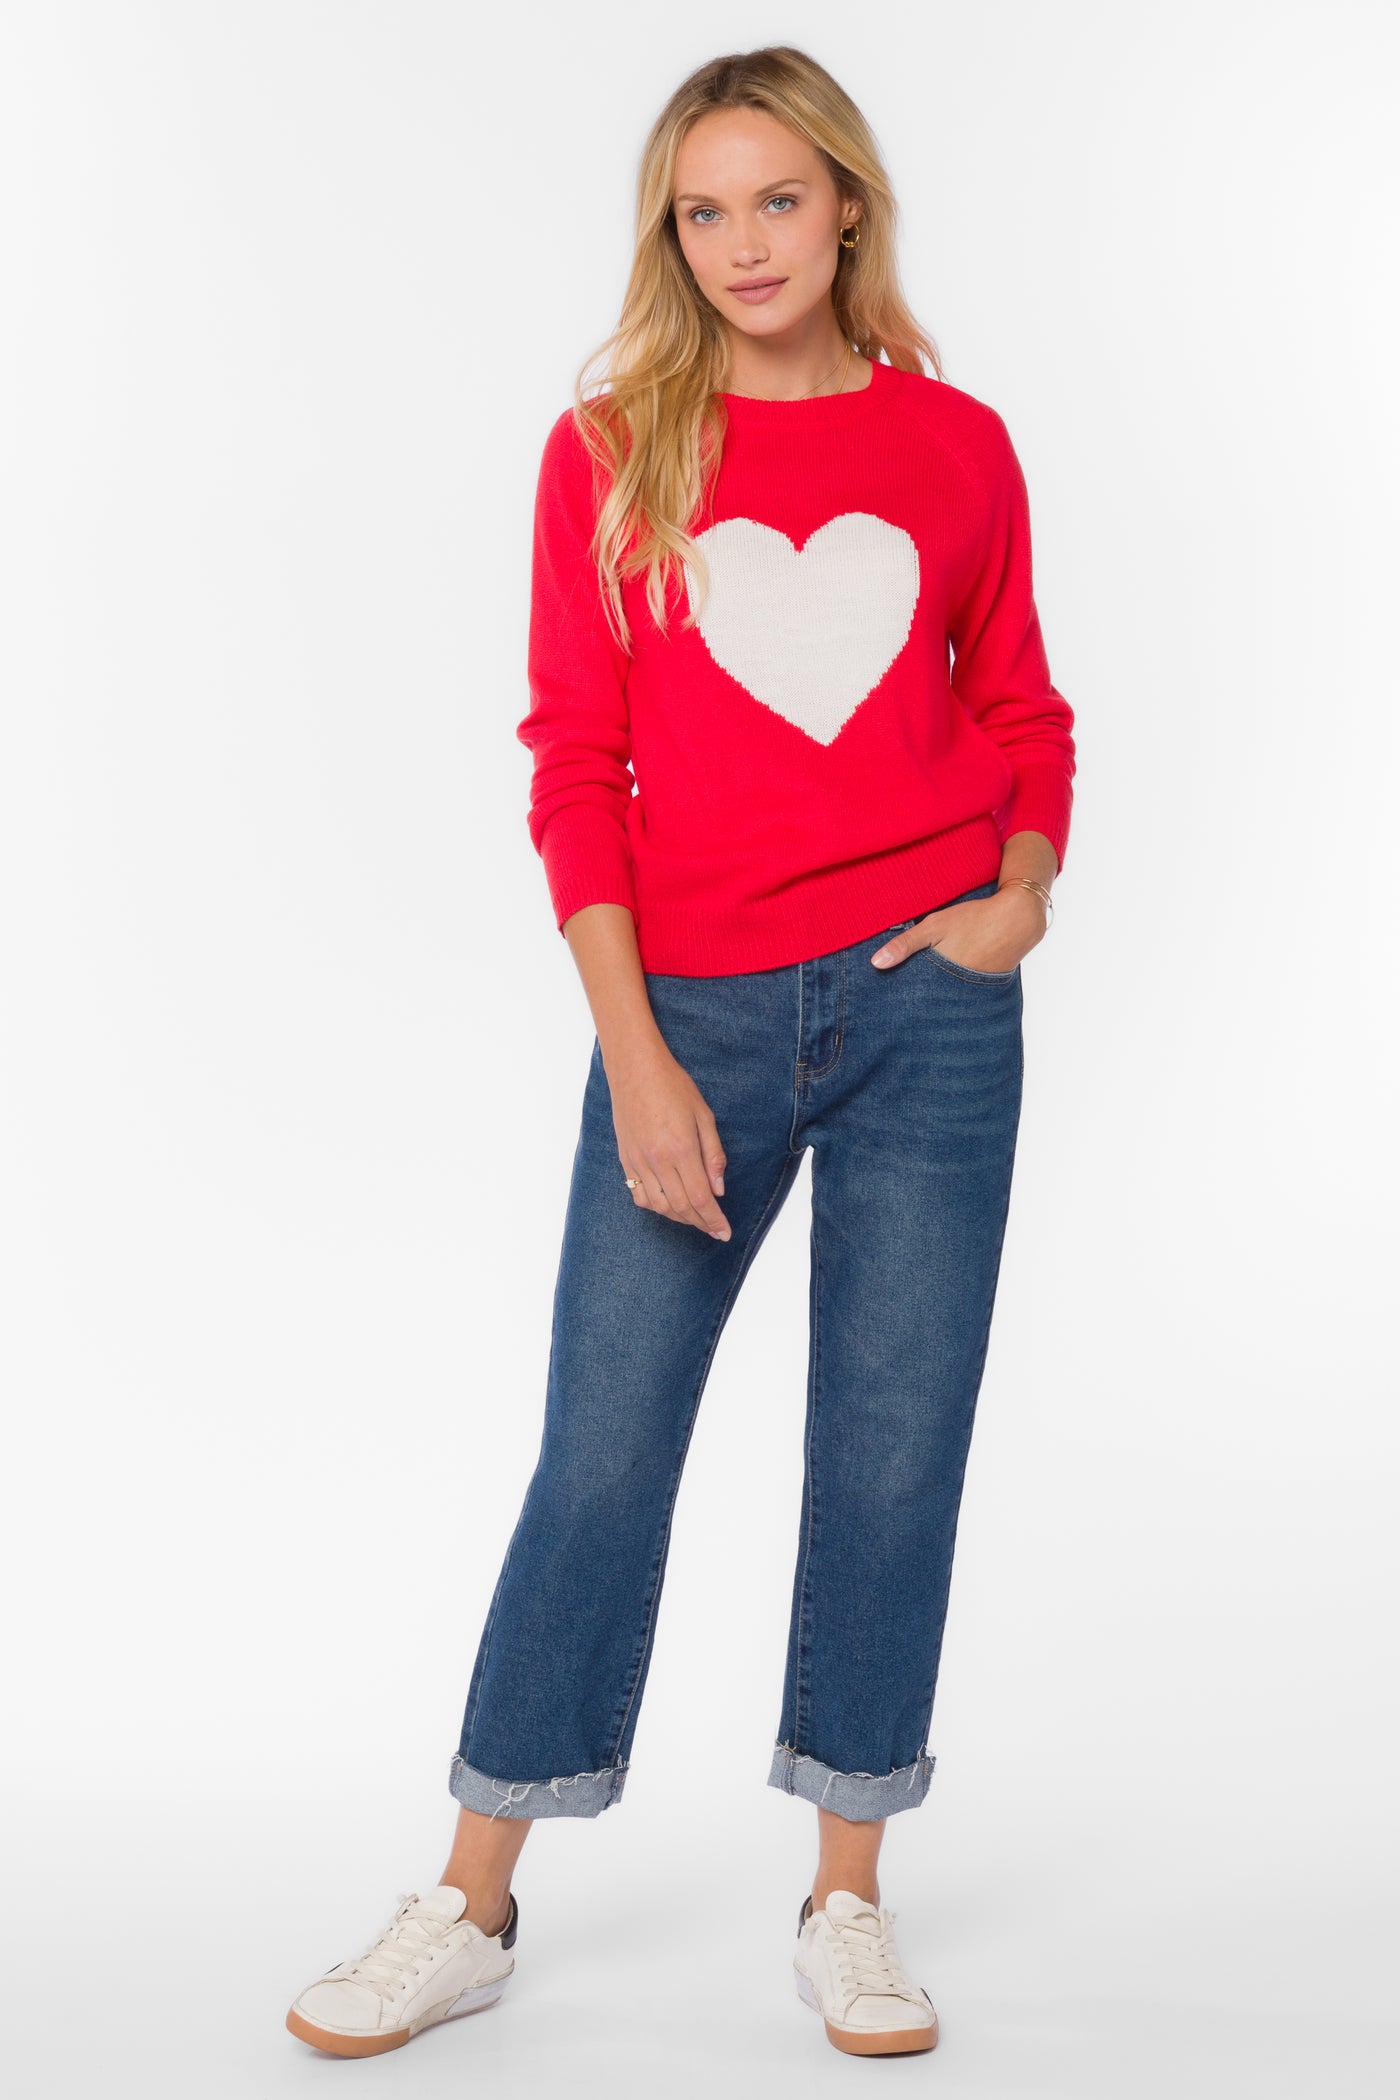 Nena Red Heart Sweater - Sweaters - Velvet Heart Clothing